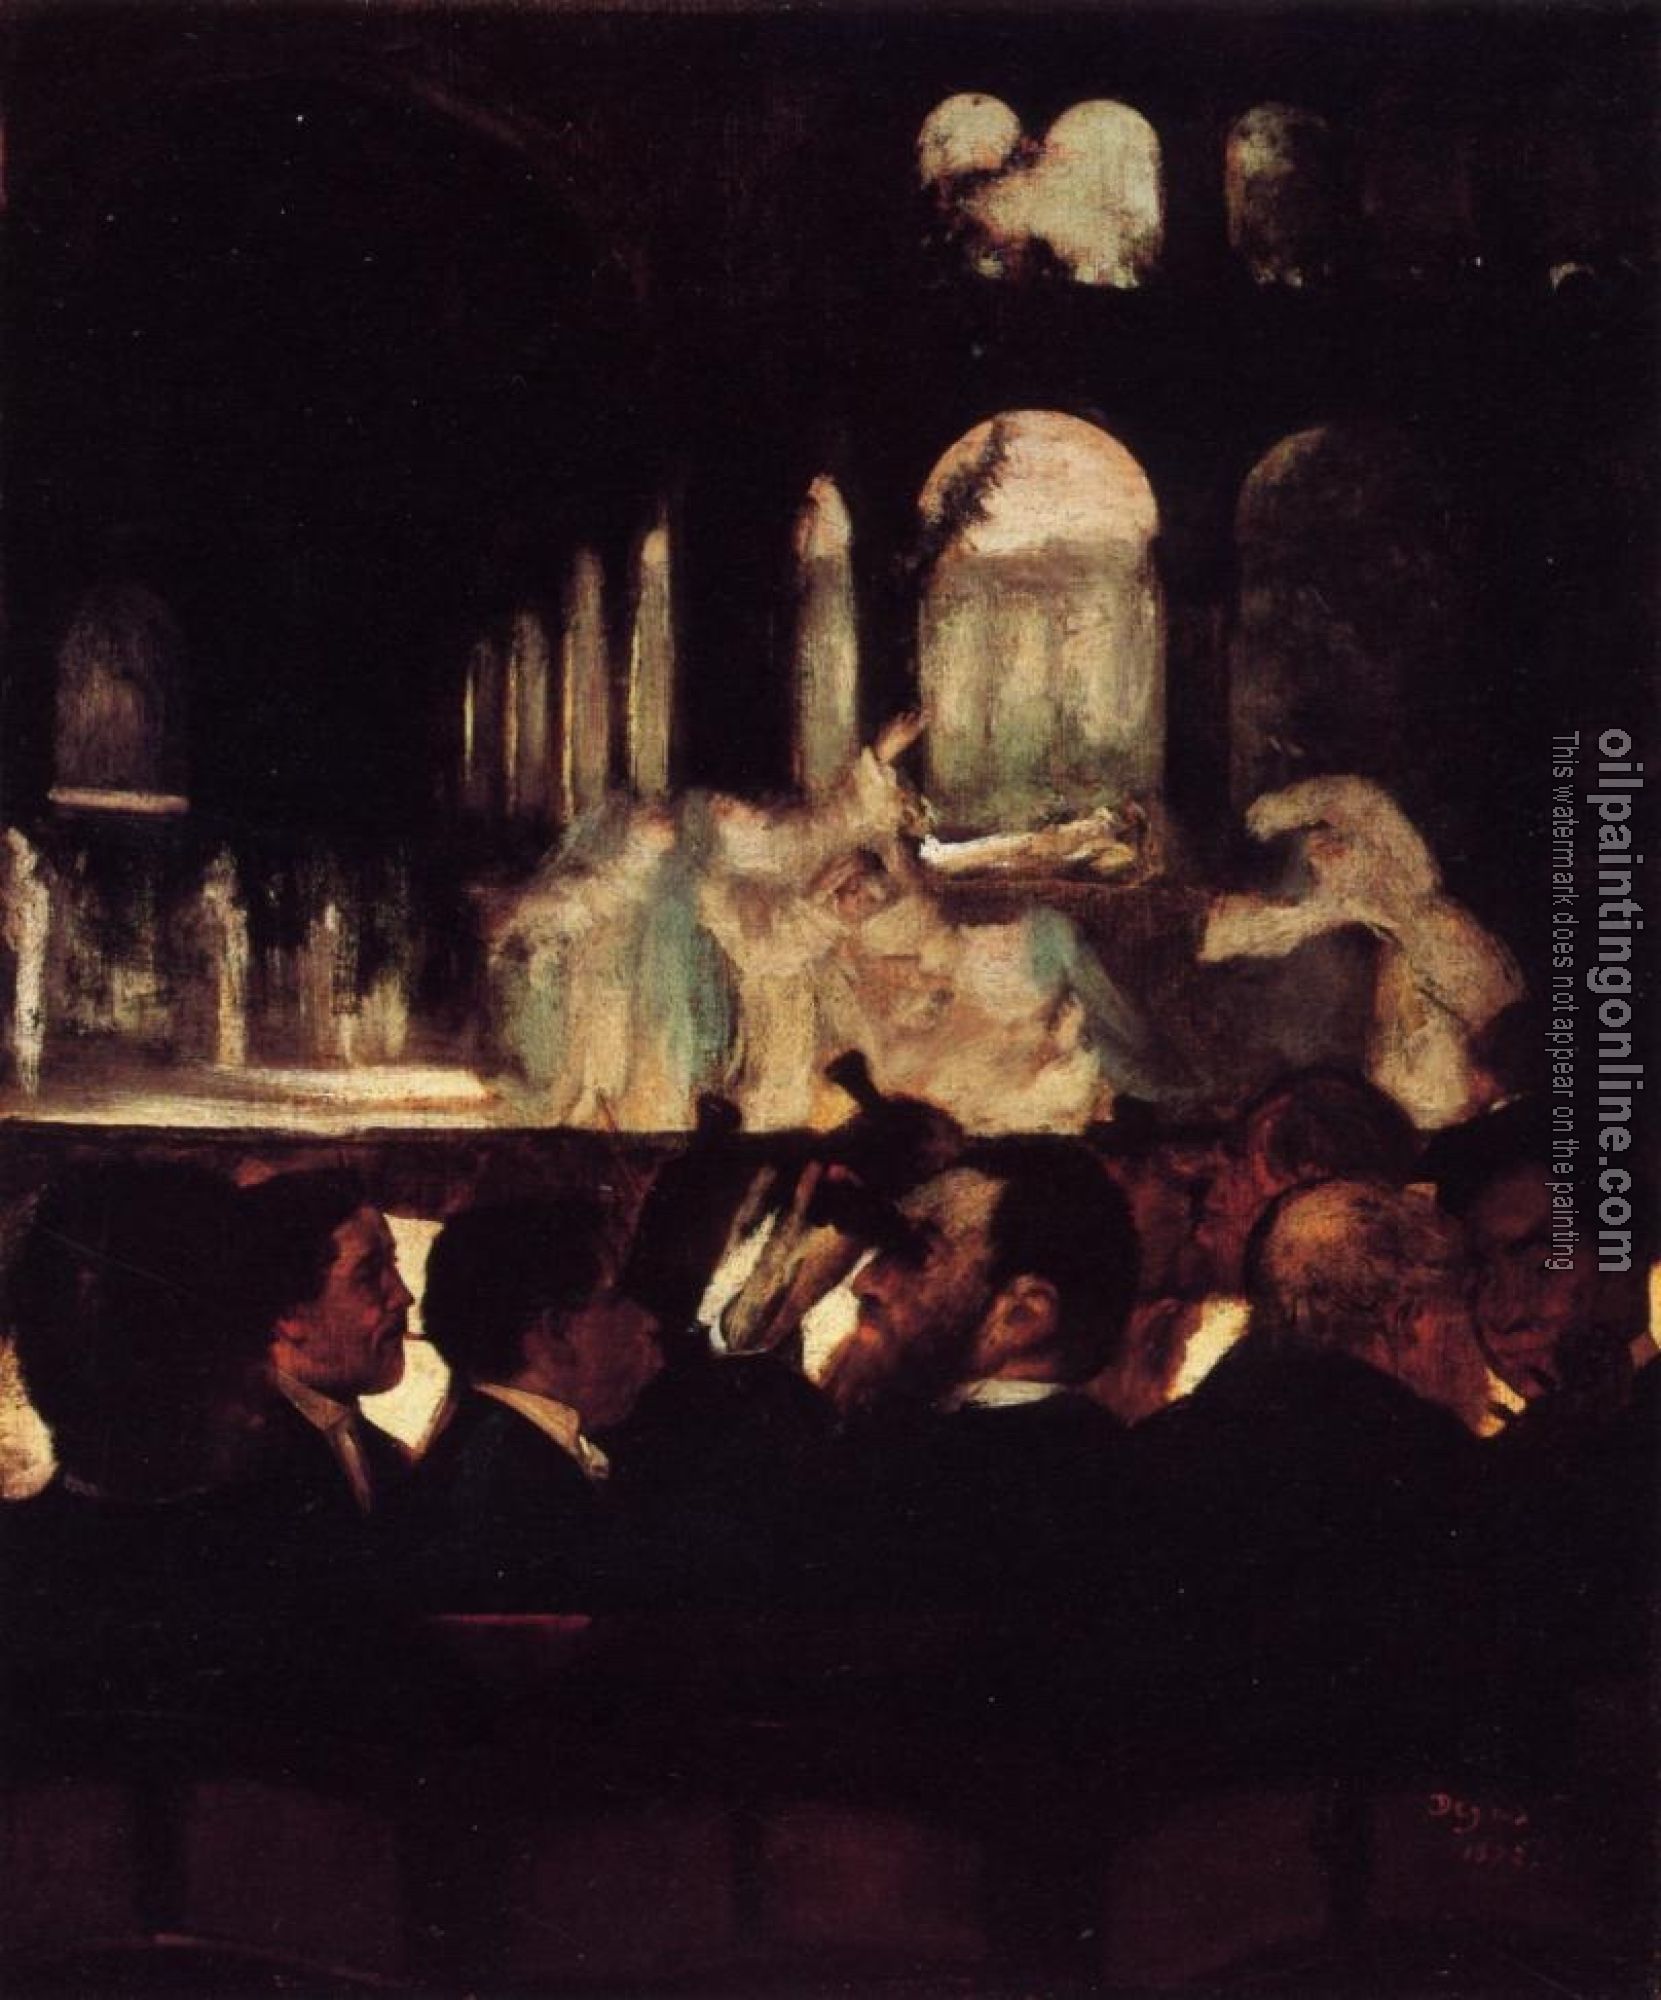 Degas, Edgar - The Ballet Scene from Robert la Diable